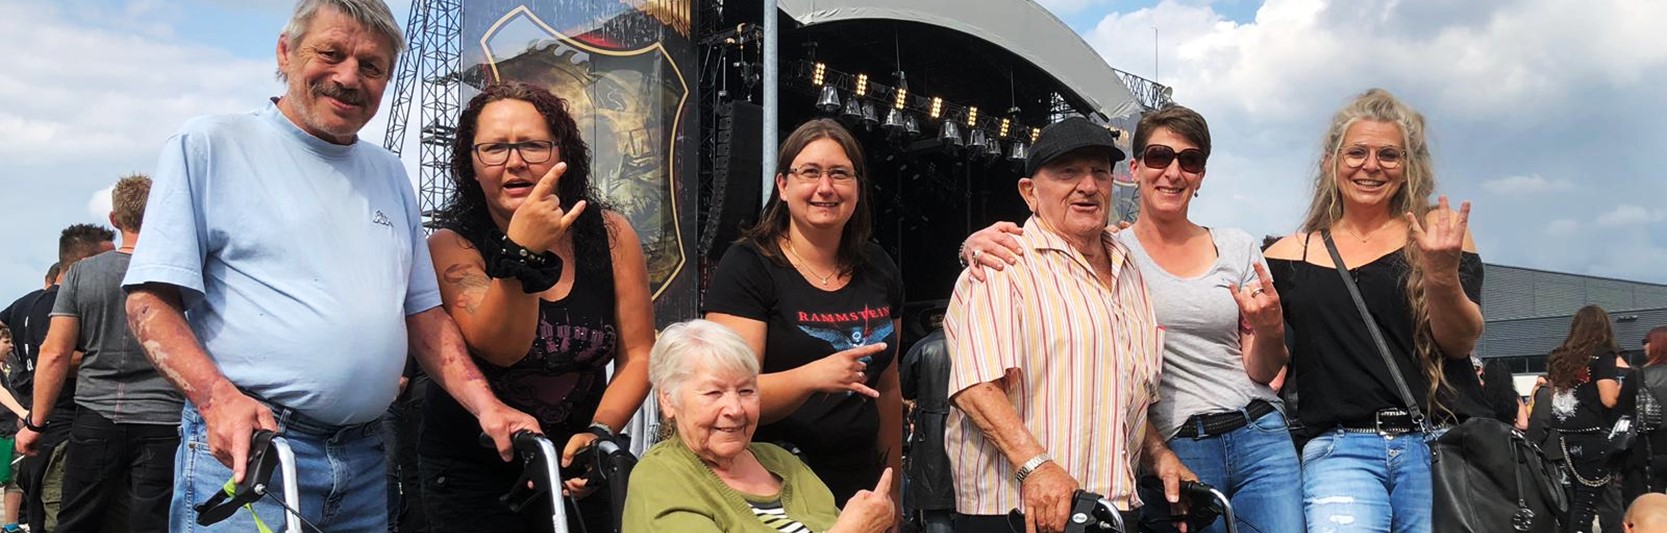 Rock’n´Roll im hohen Alter: Senioren zu Besuch auf einem Metal-Konzert